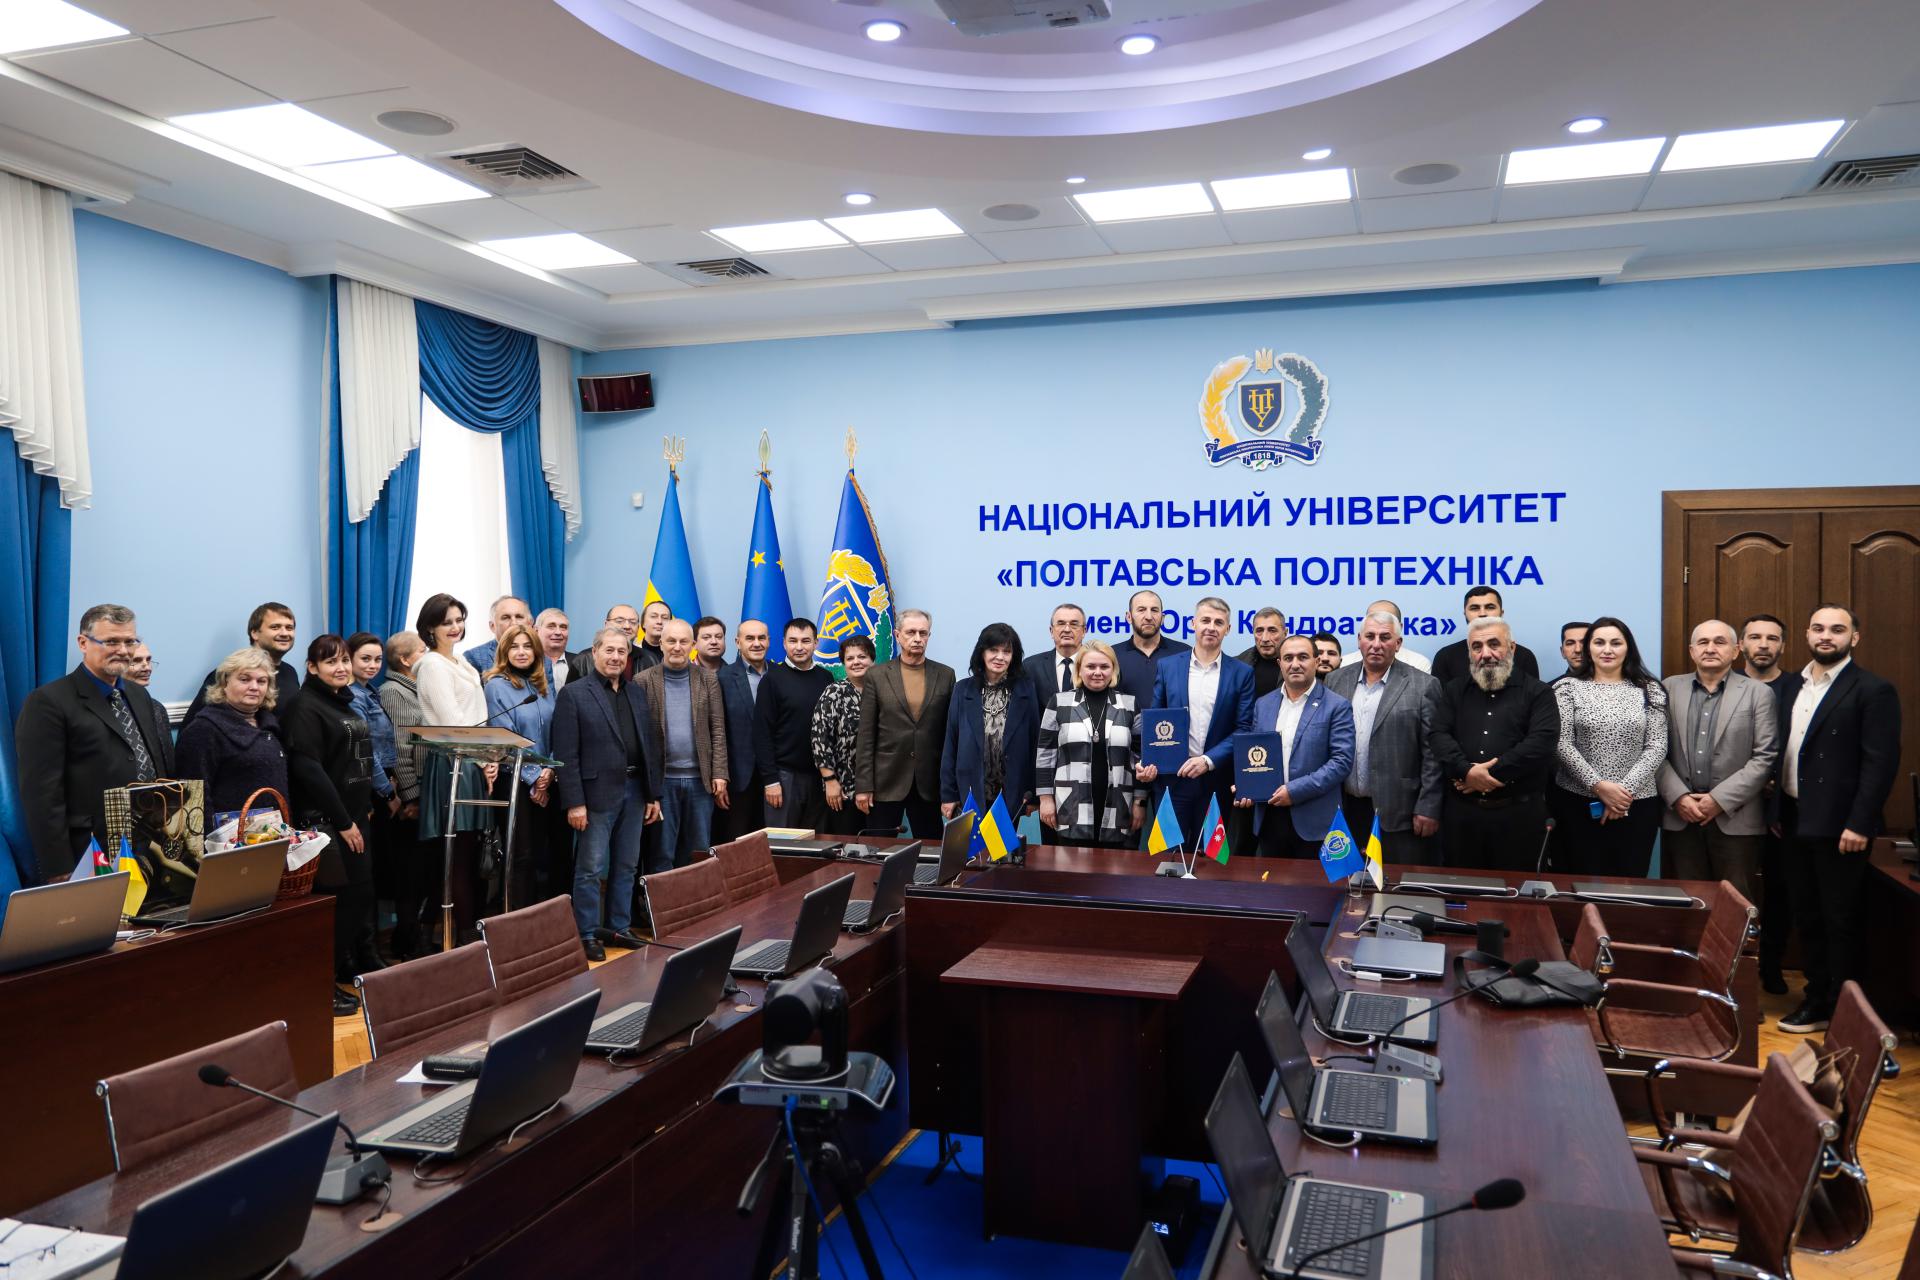 Полтавська політехніка підписала меморандум про співпрацю з Радою азербайджанців України у Полтавській області